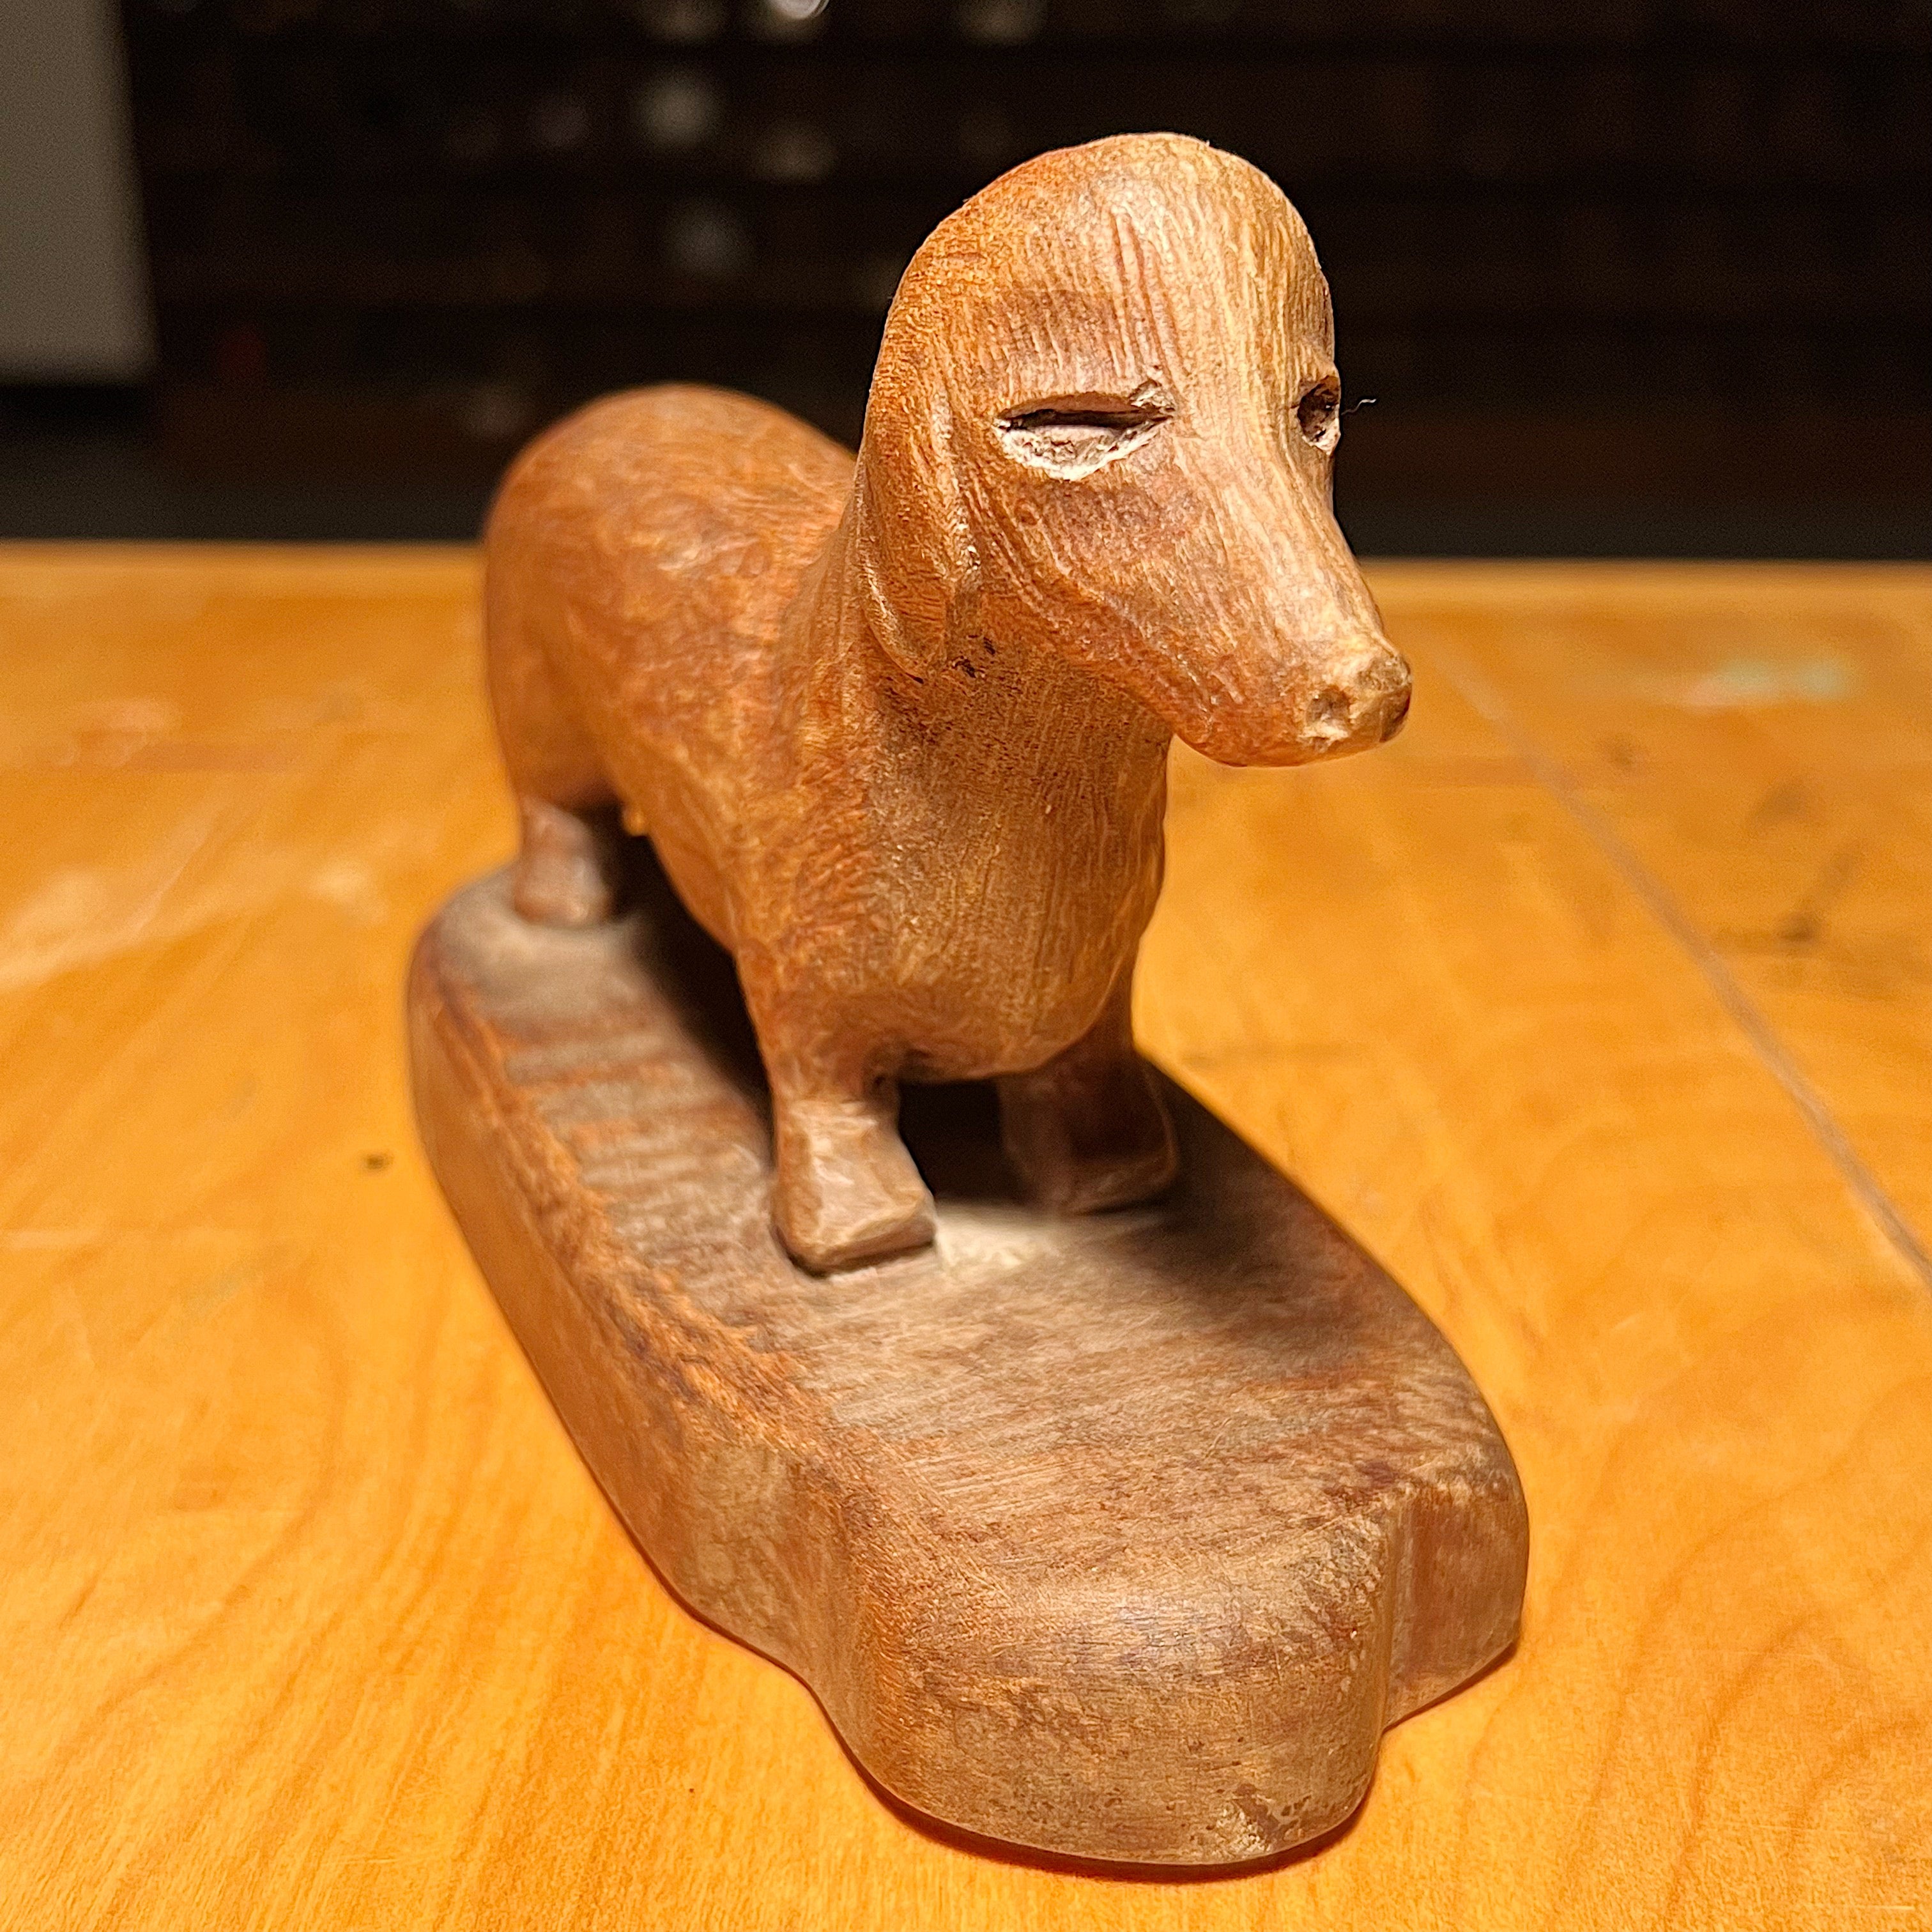 Tony Wons Folk Art Sculpture of Dachshund Dog | Signed 1955